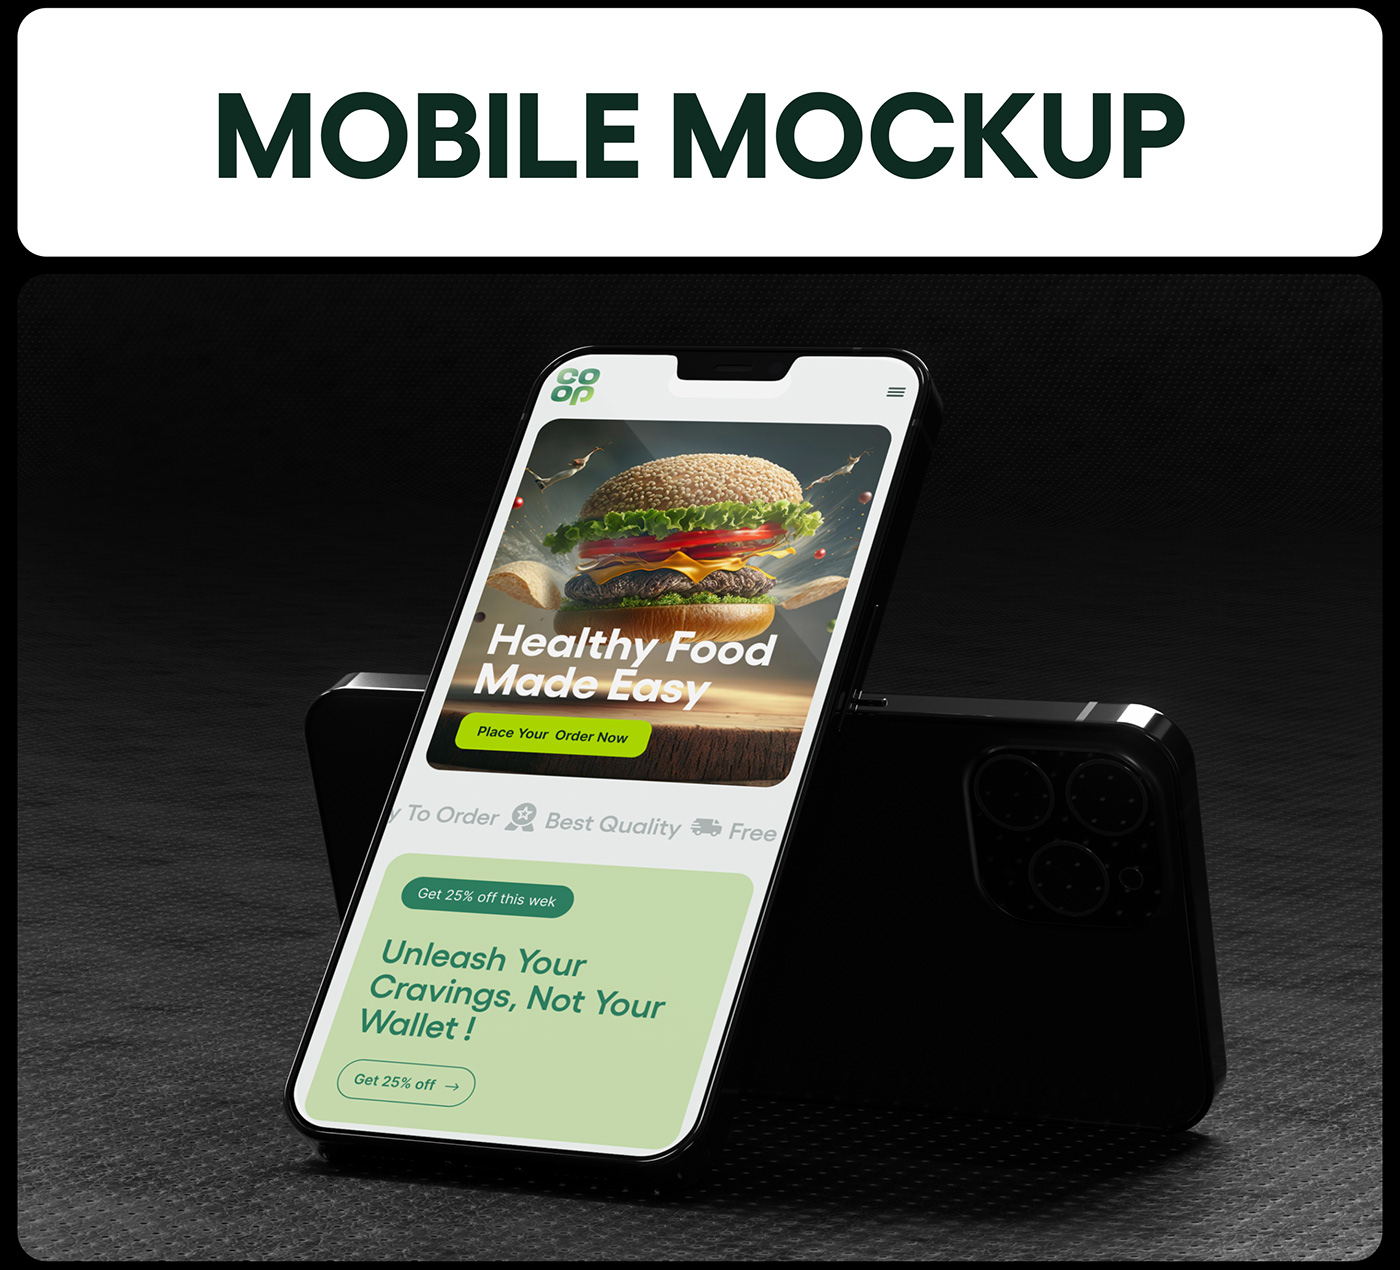 Food website Design Website Design UI/UX user experience landing page Modern Design green Fast food online food delivery restaurant